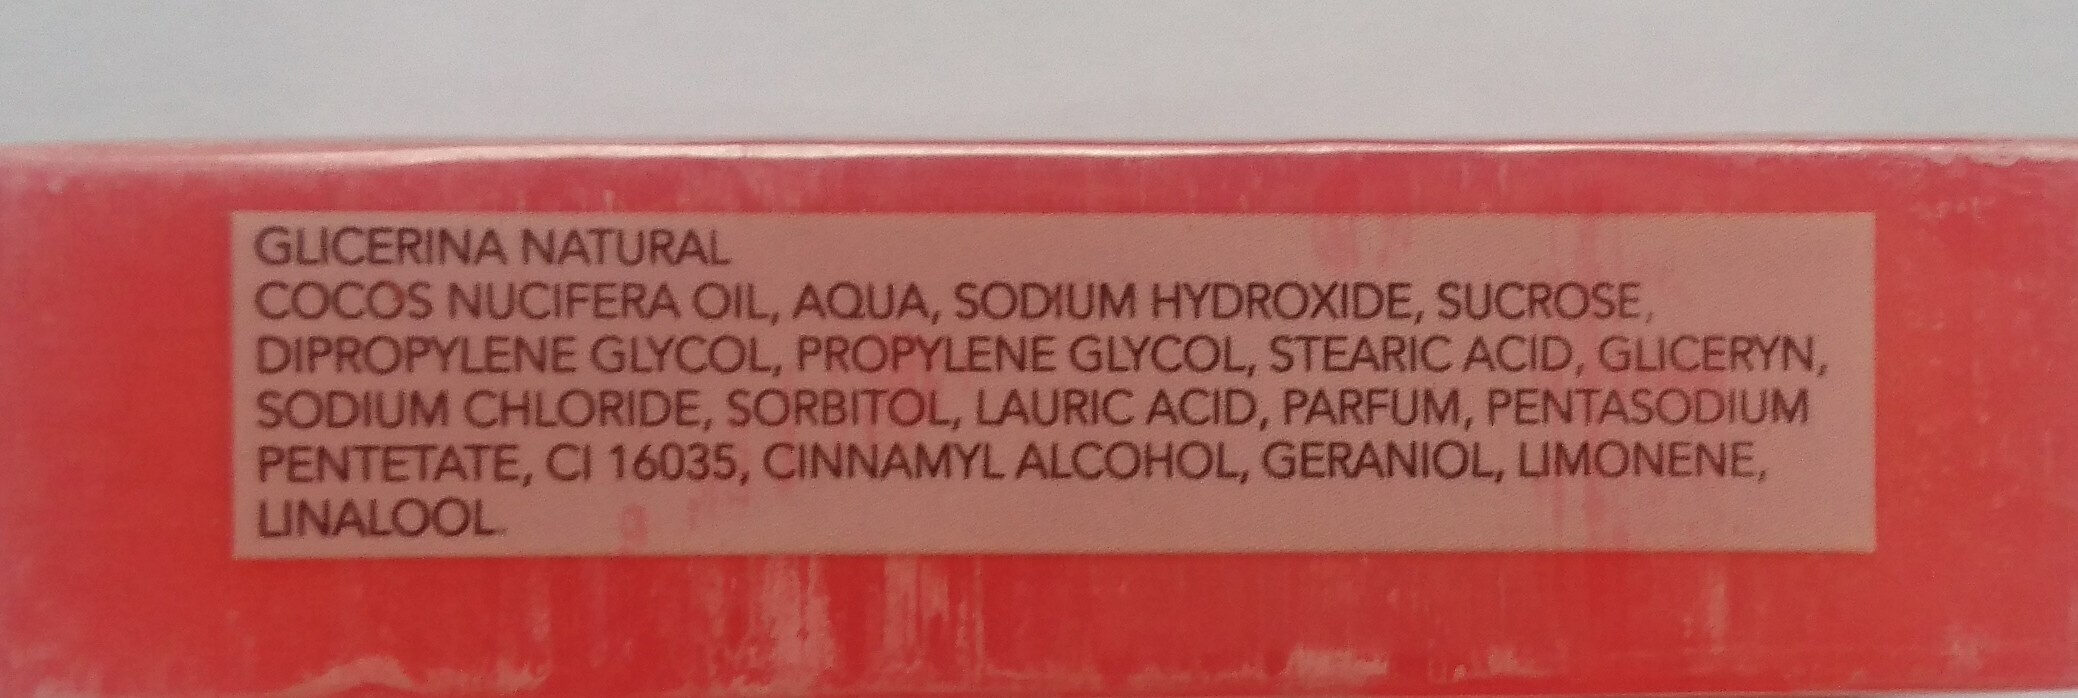 Glicerina Sabonete Natural - Ingredients - en